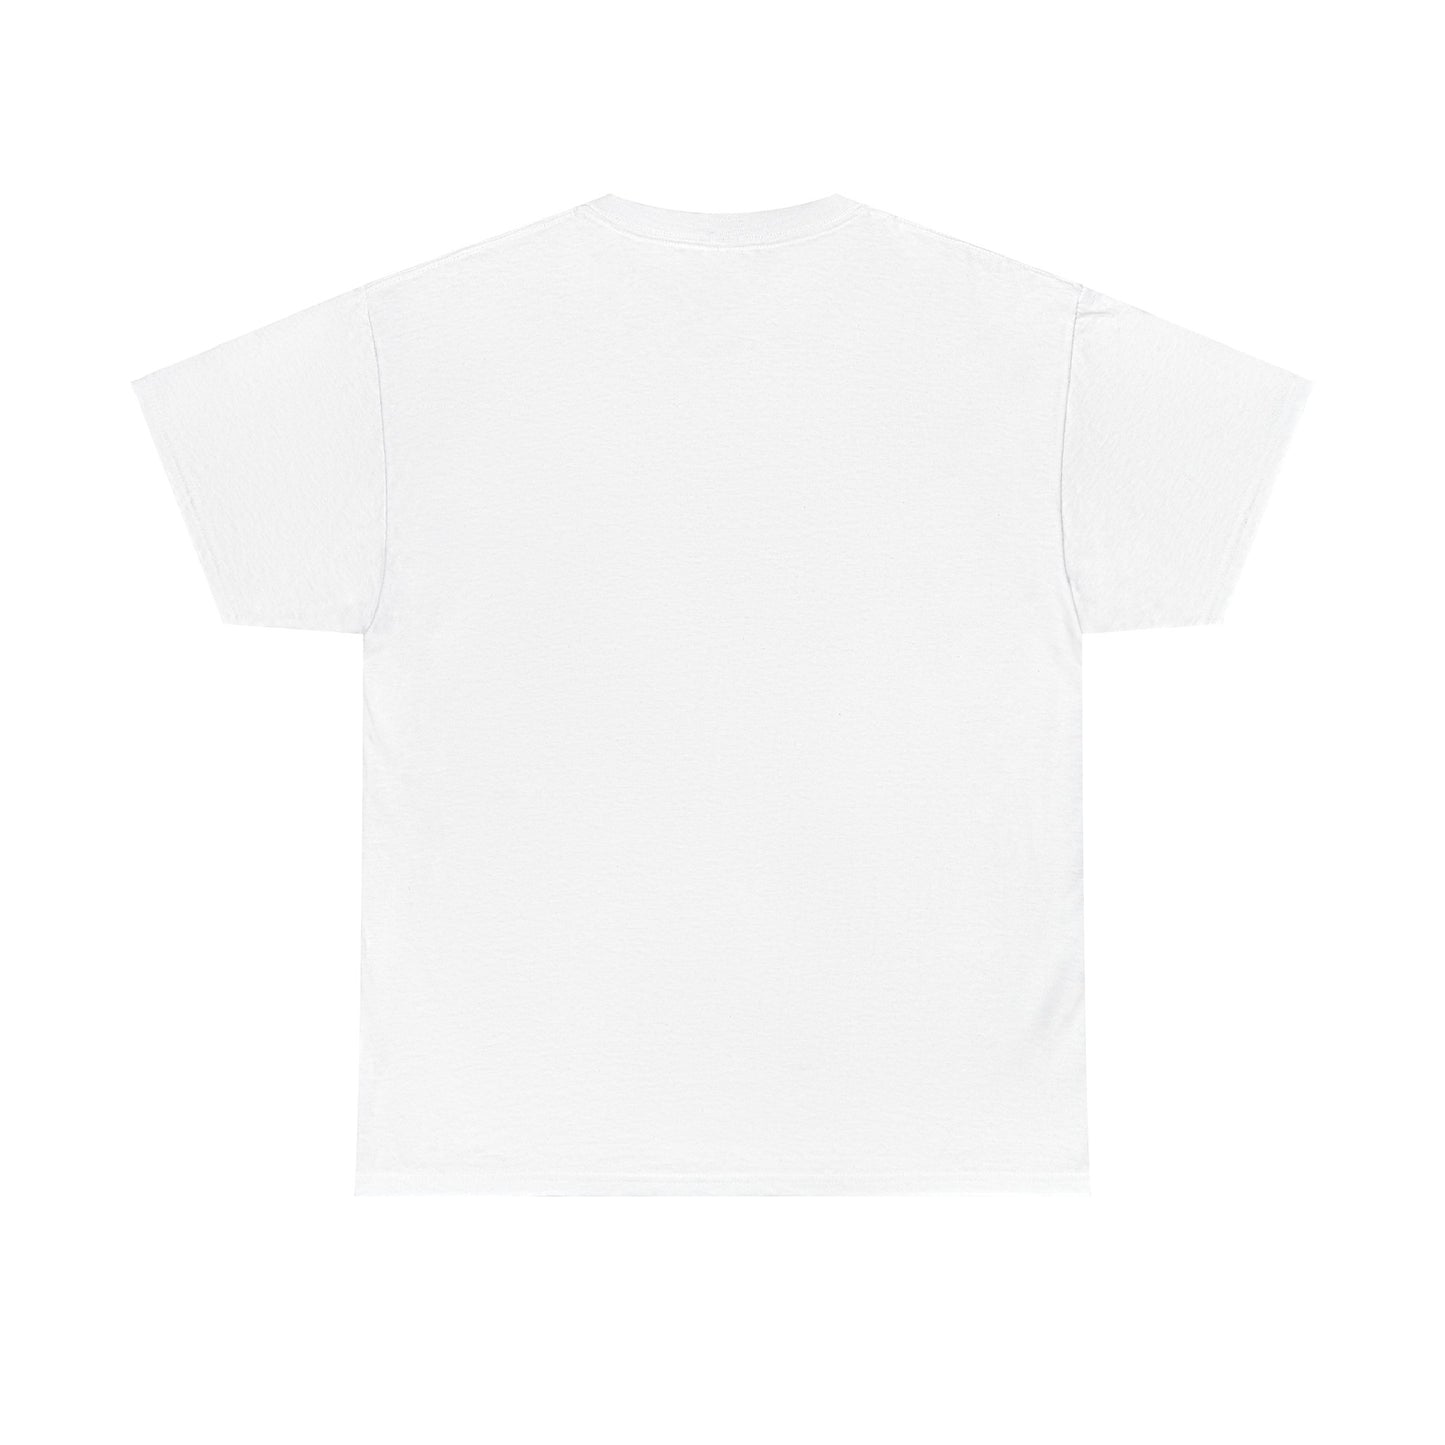 Thinner T-shirt